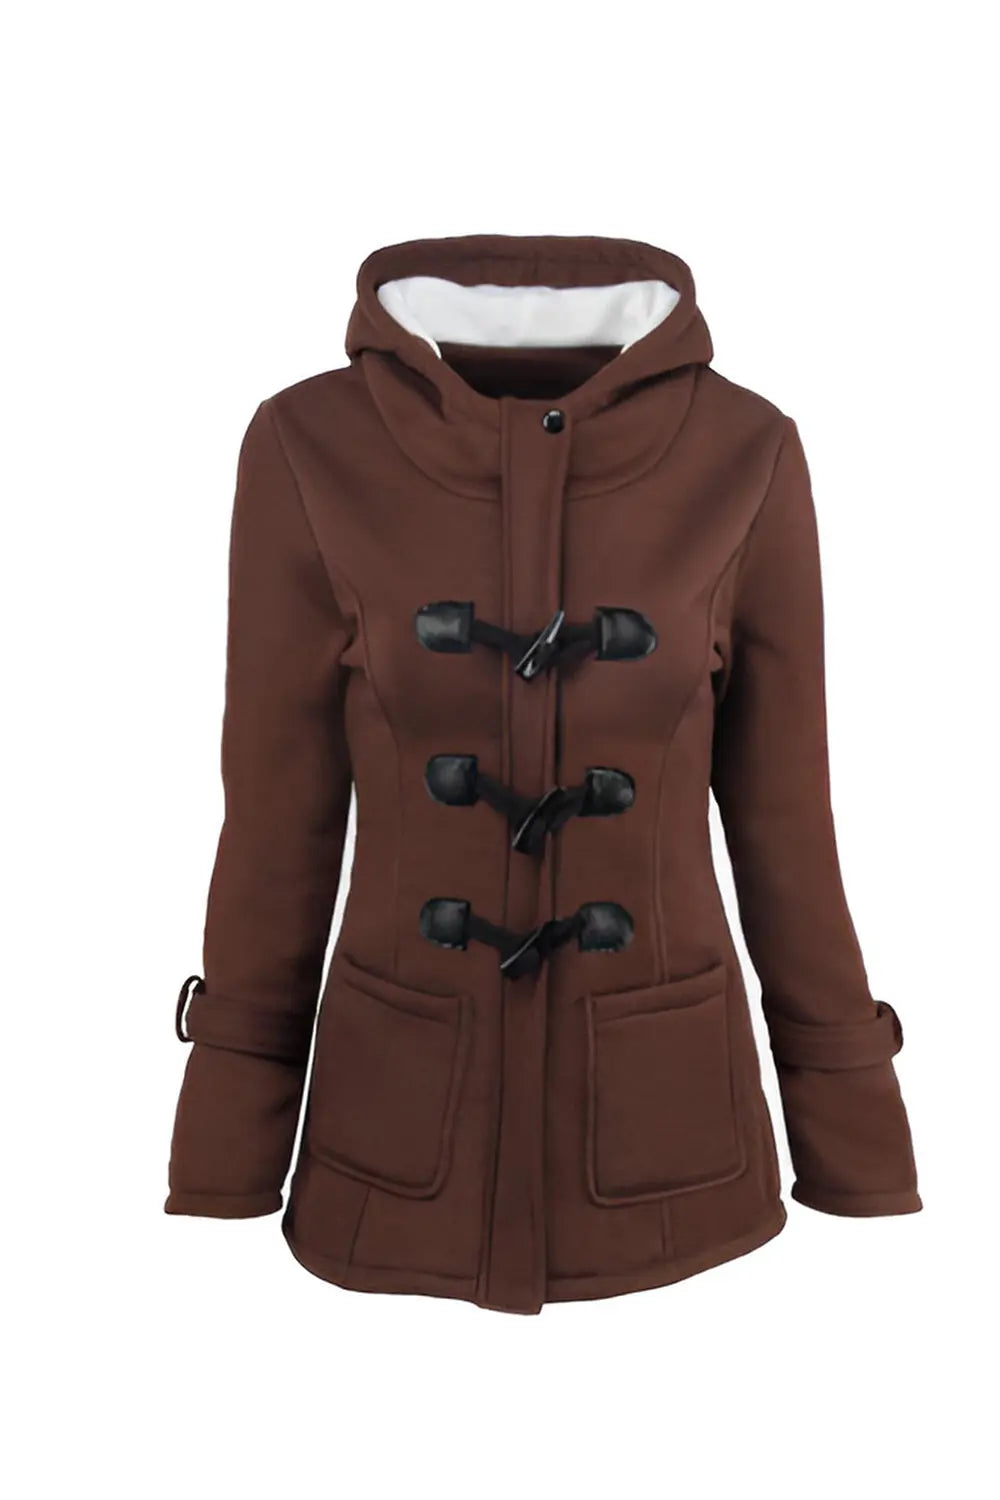 Warm Winter Fur Collar Jackets - Brown - Strange Clothes